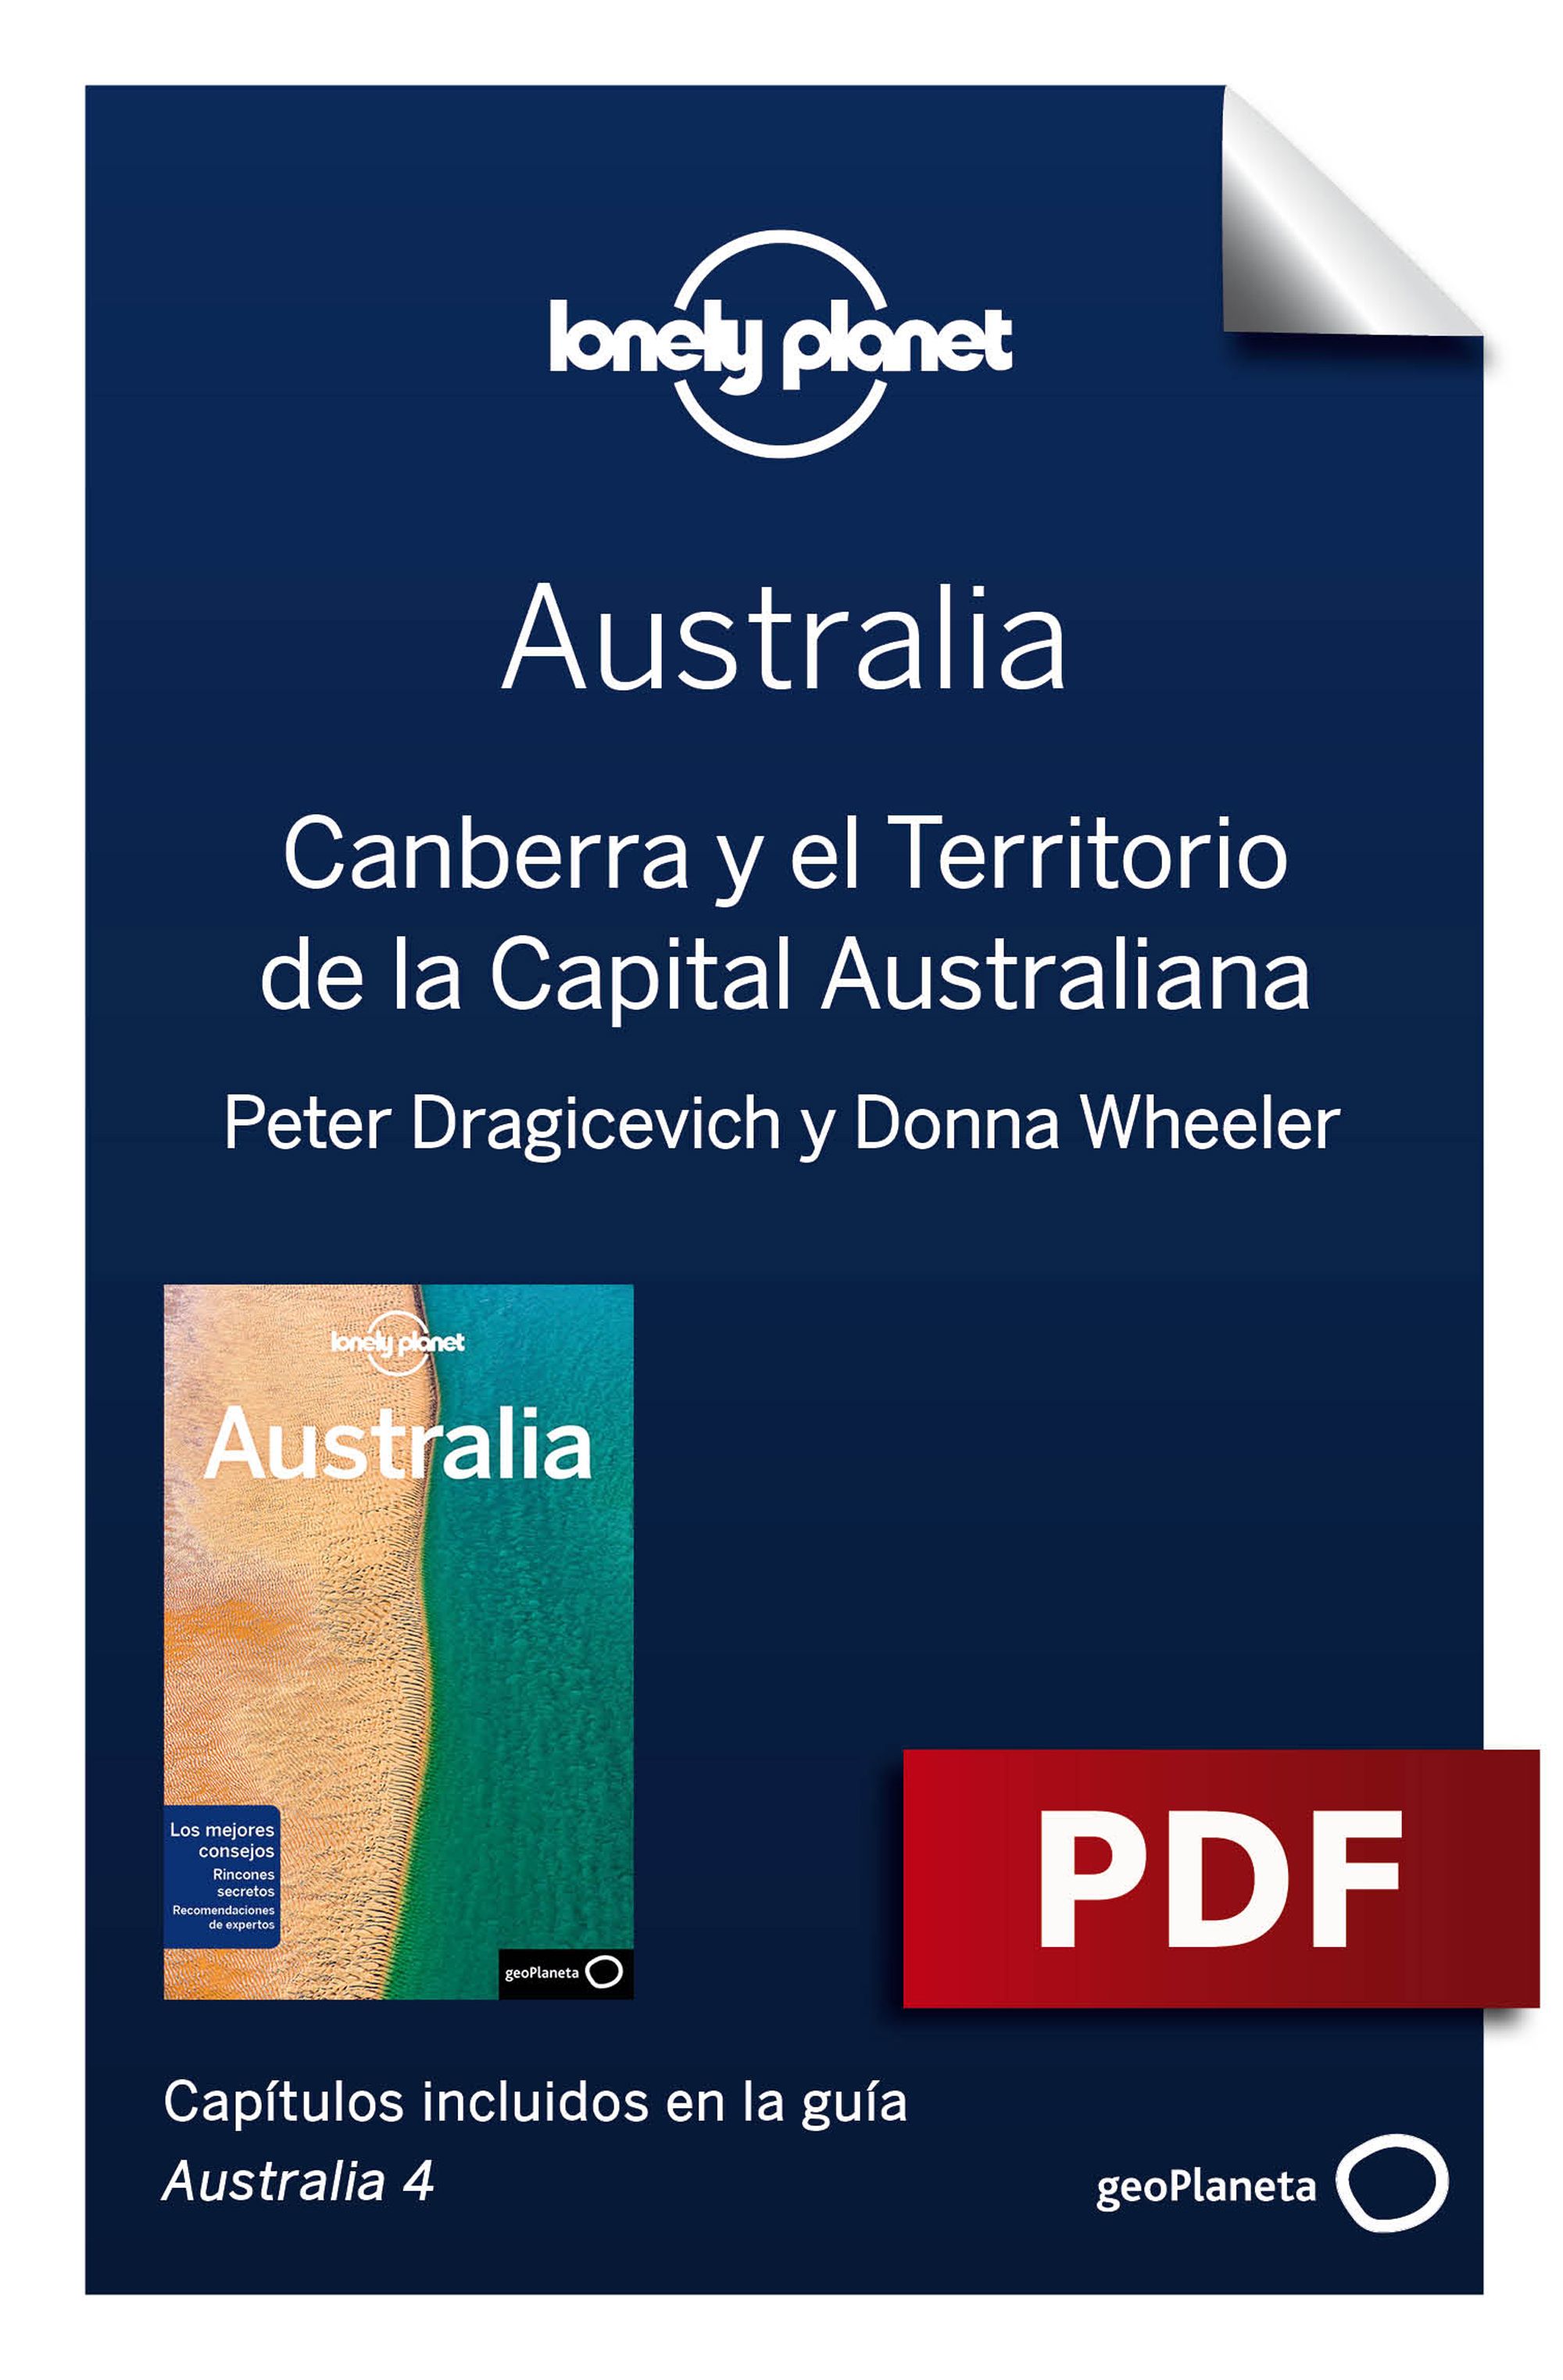 Canberra y el Territorio de la Capital Australiana